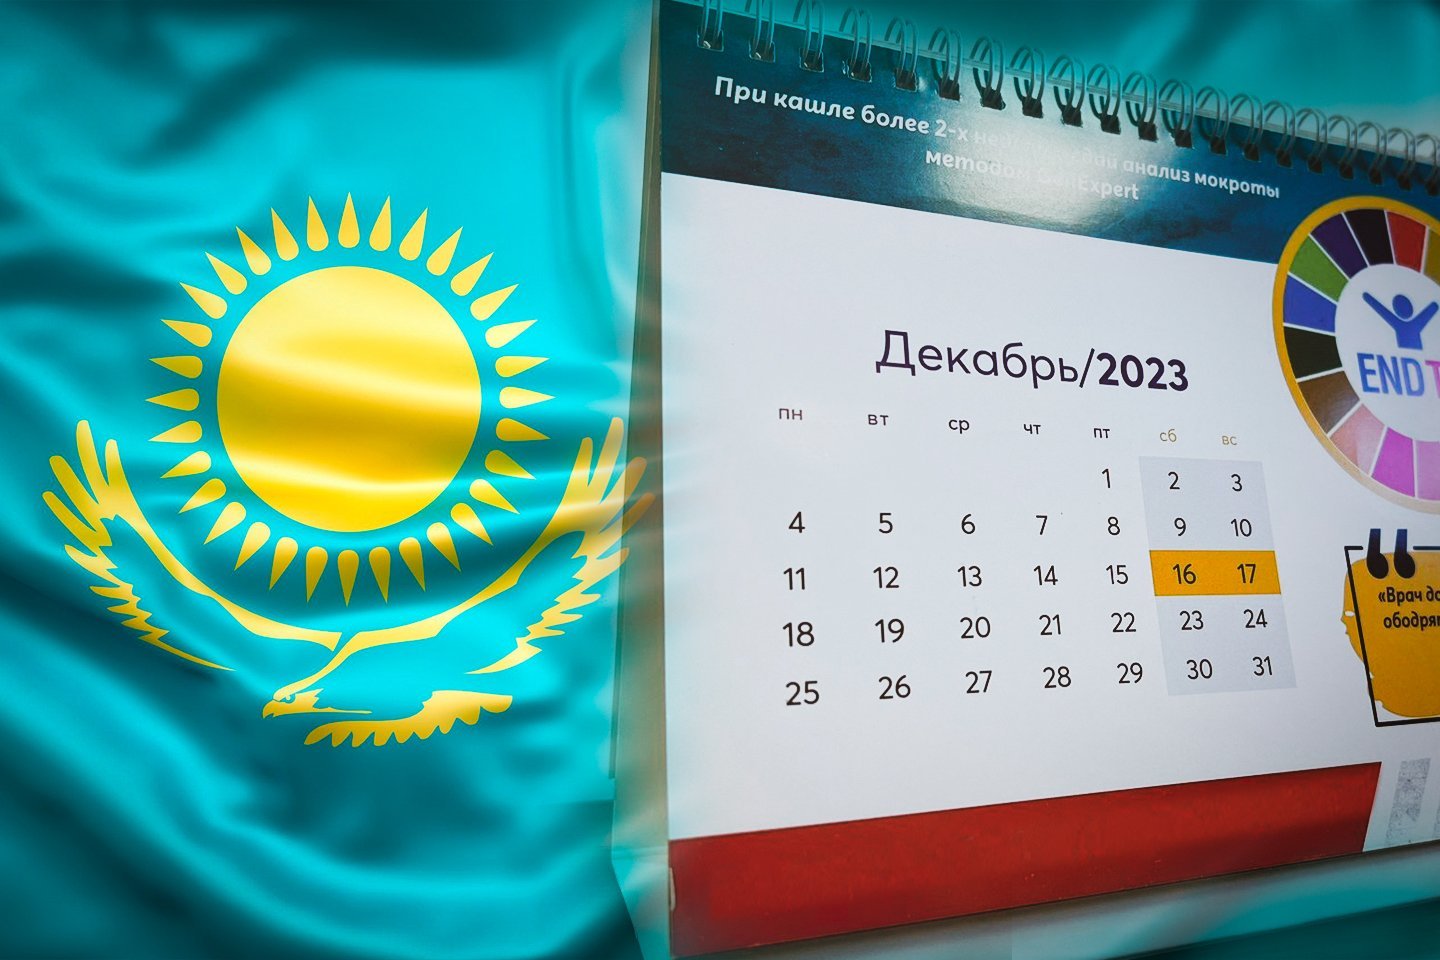 Новости Казахстана / Общество в Казахстане / Как будут отдыхать жители Казахстана в декабре